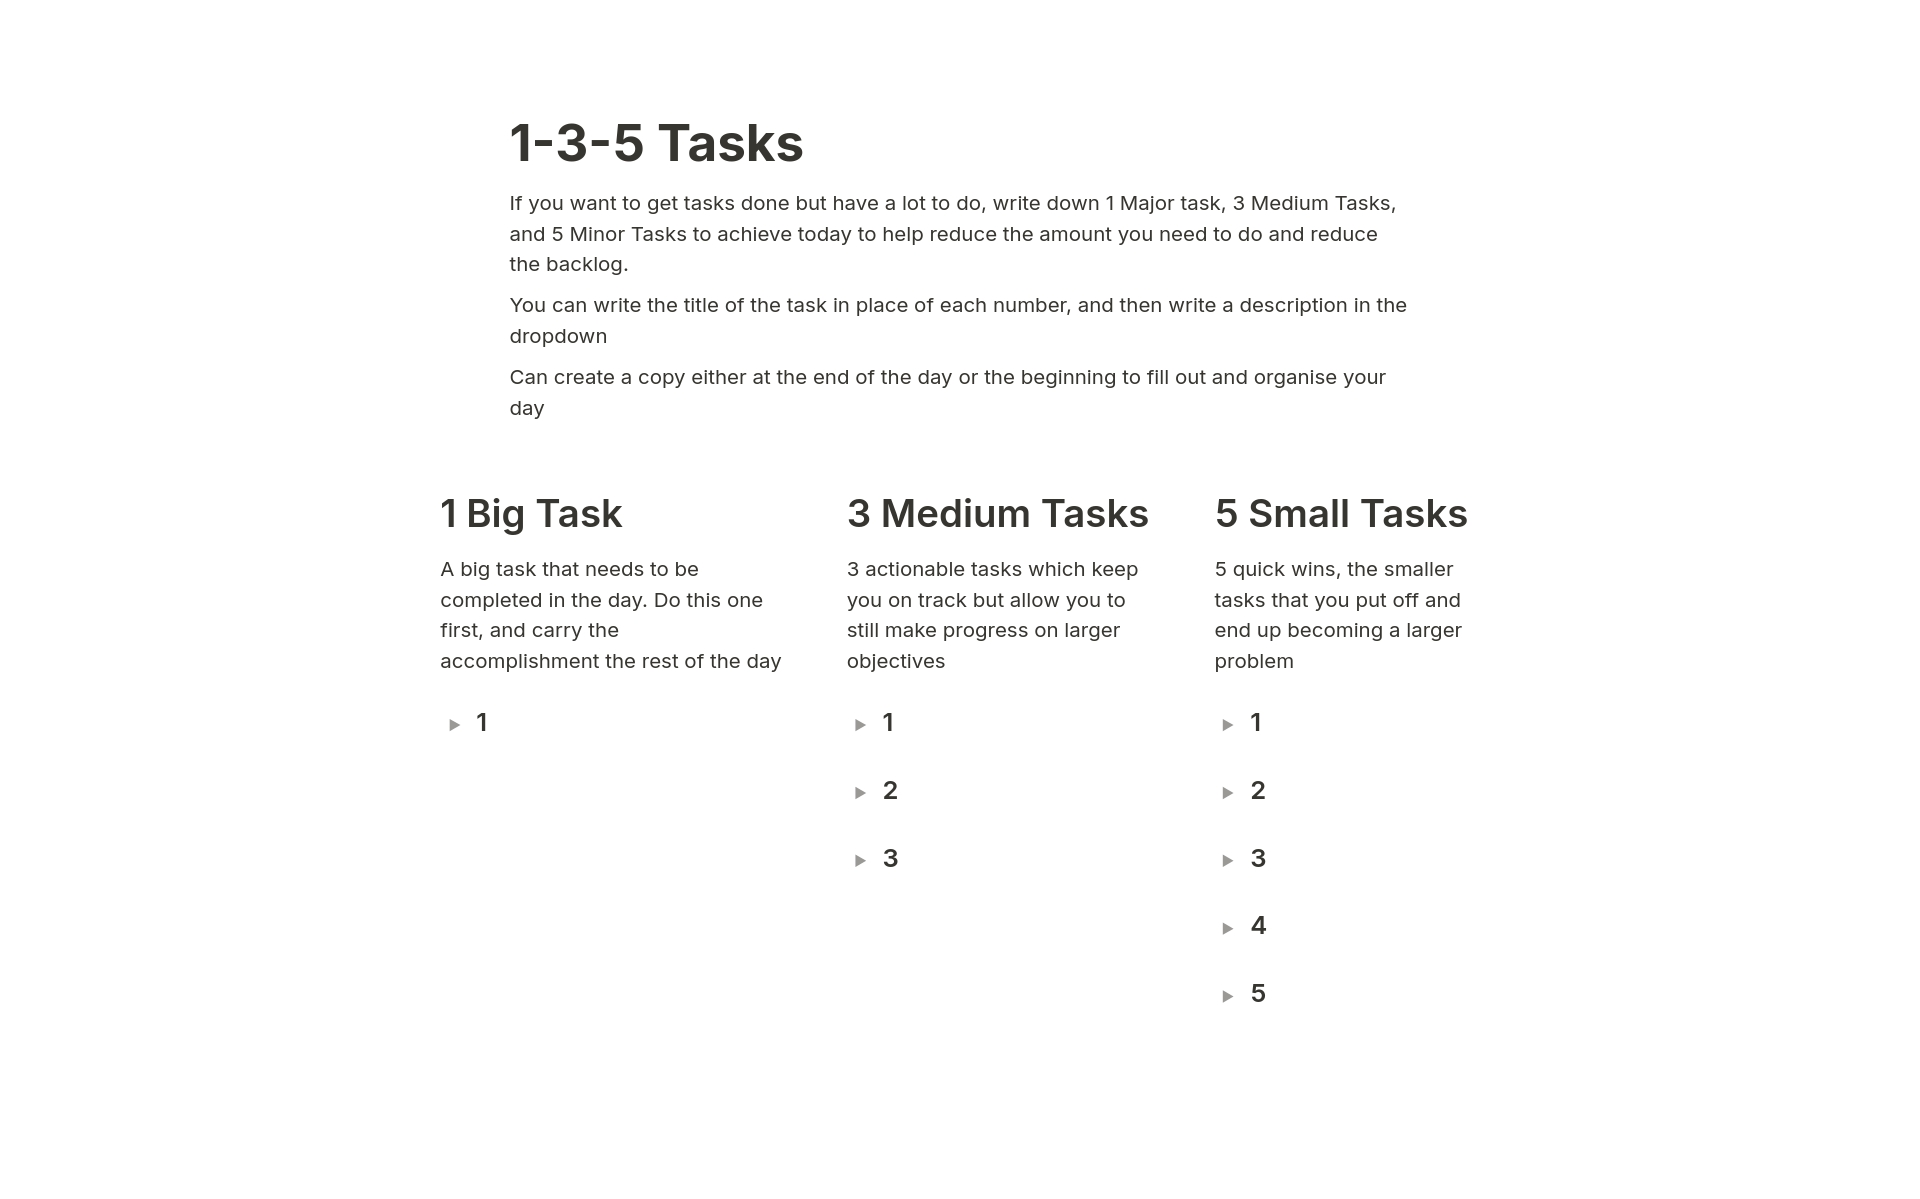 En förhandsgranskning av mallen för 1-3-5 Tasks